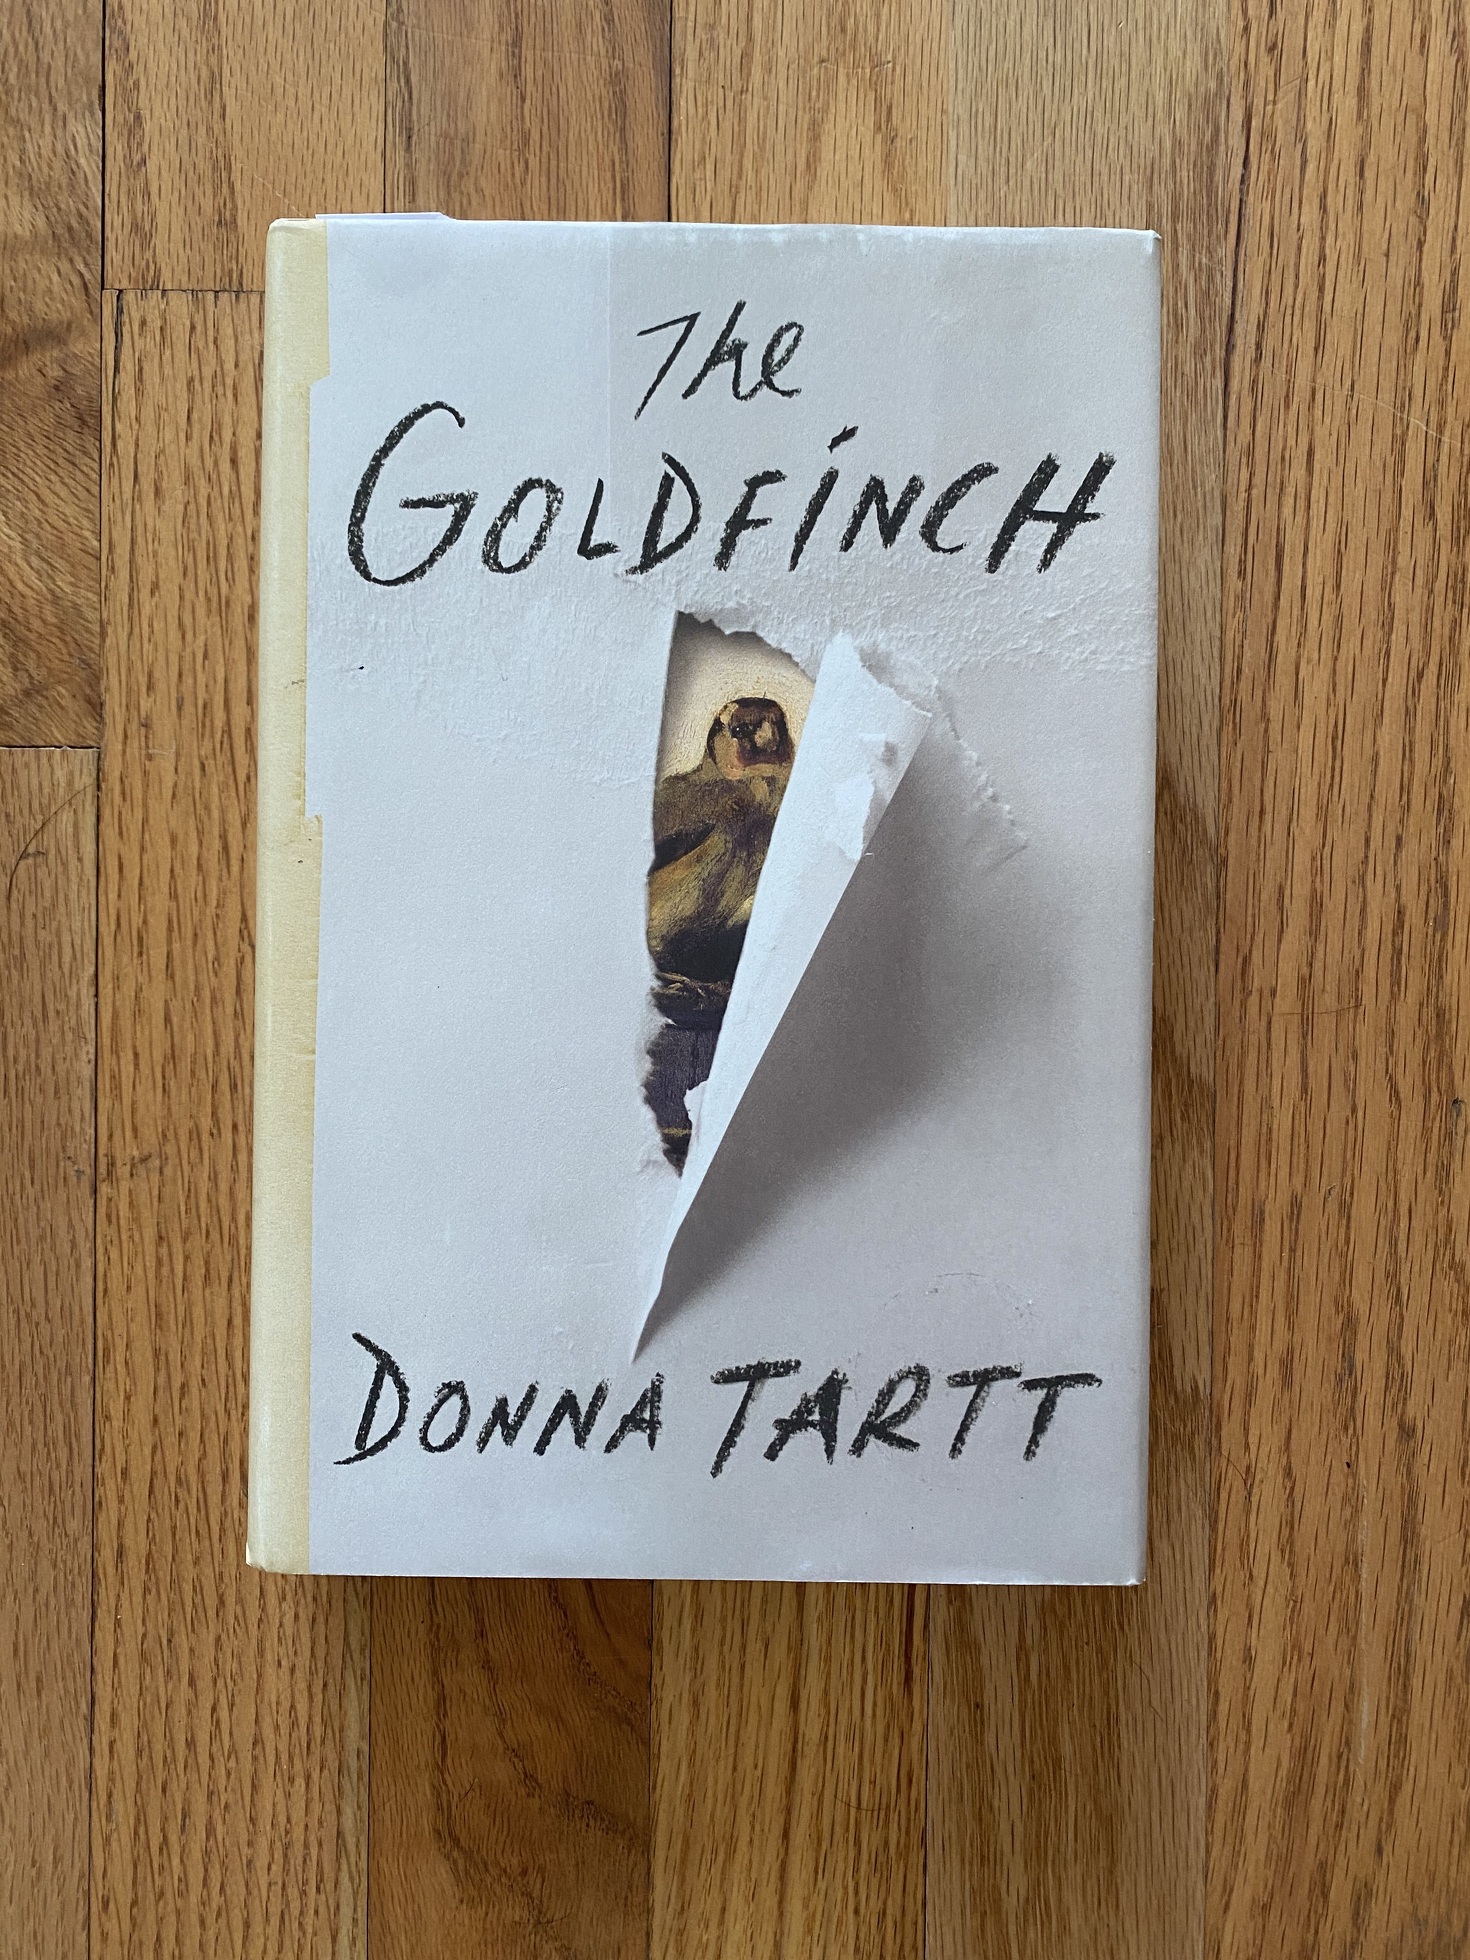 Donna Tartt récompensée du Pulitzer pour The Goldfinch